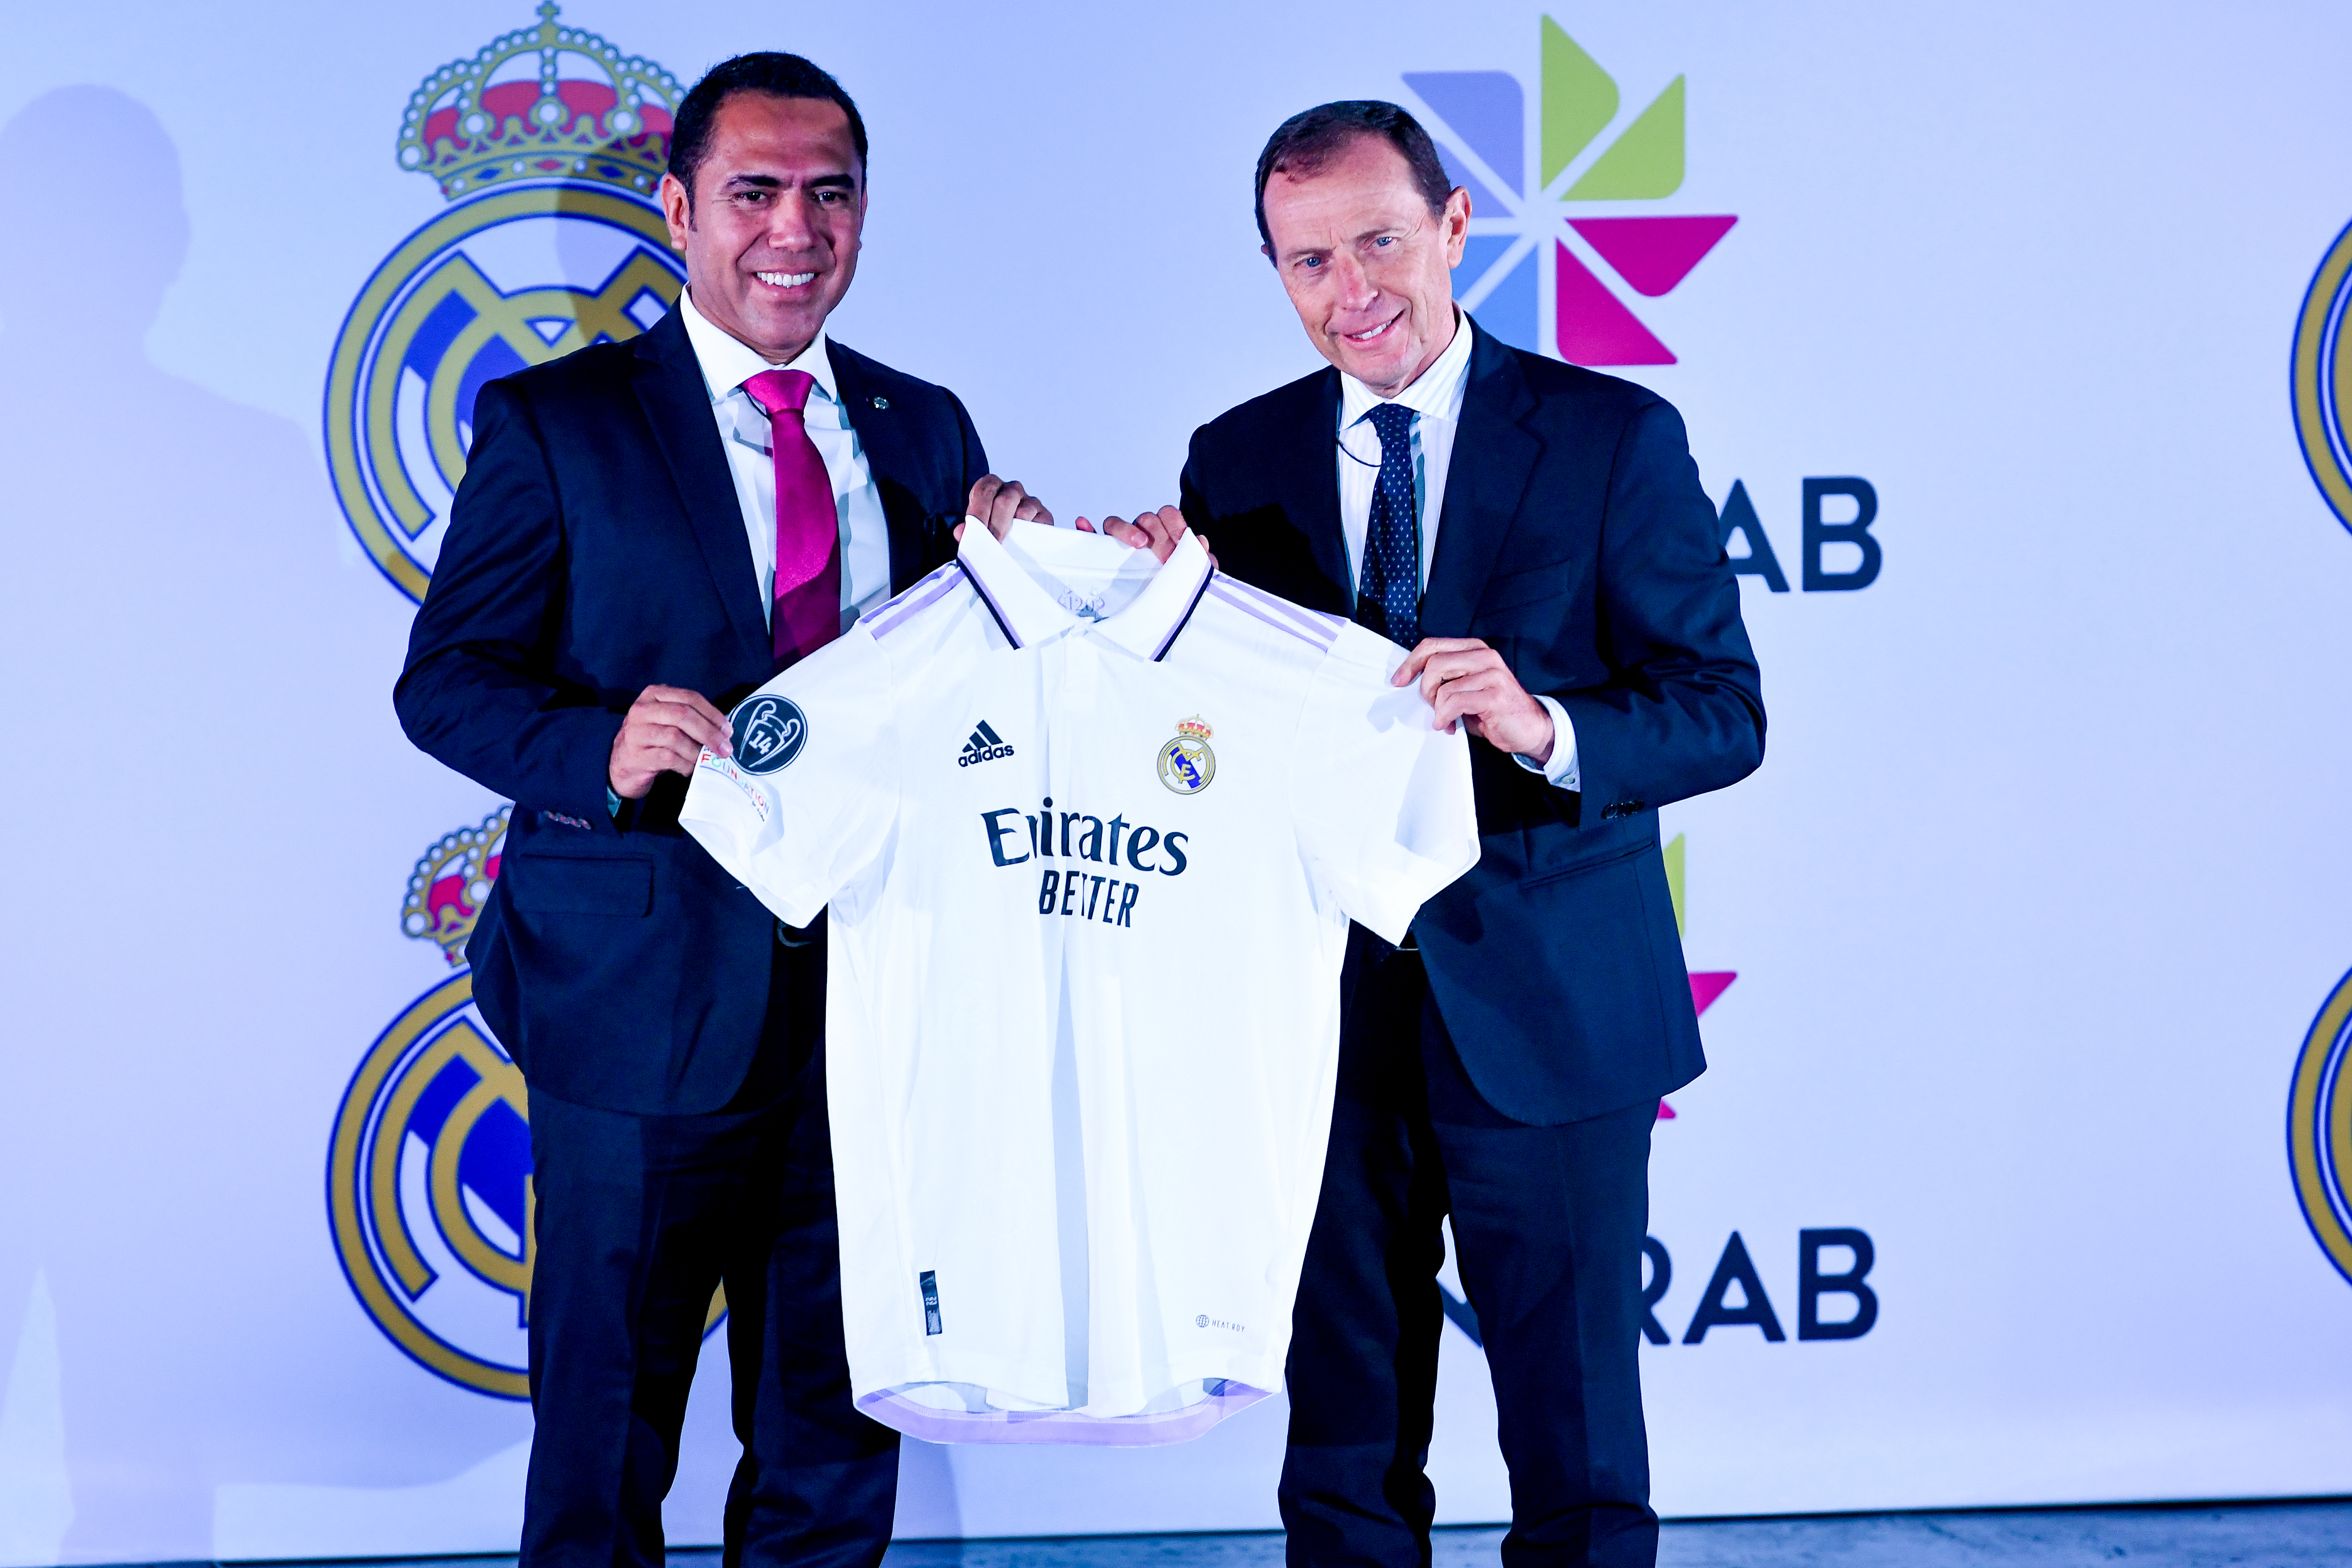 El exjugador español estuvo en el país en representación de la institución del Real Madrid para firmar el convenio. (Foto Prensa Libre: Sergio Muñoz)